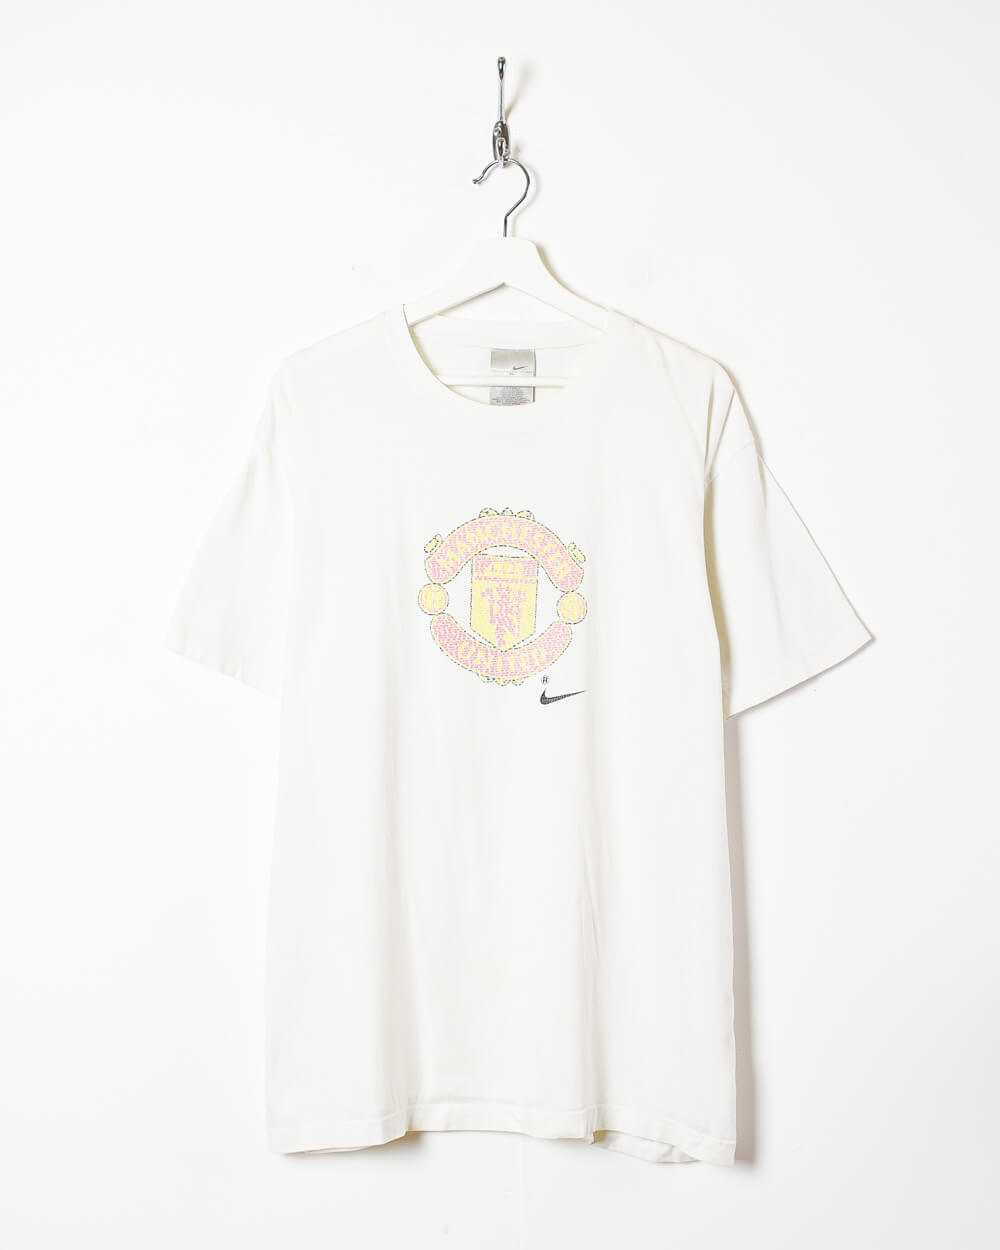 White Nike Manchester United T-Shirt - X-Large